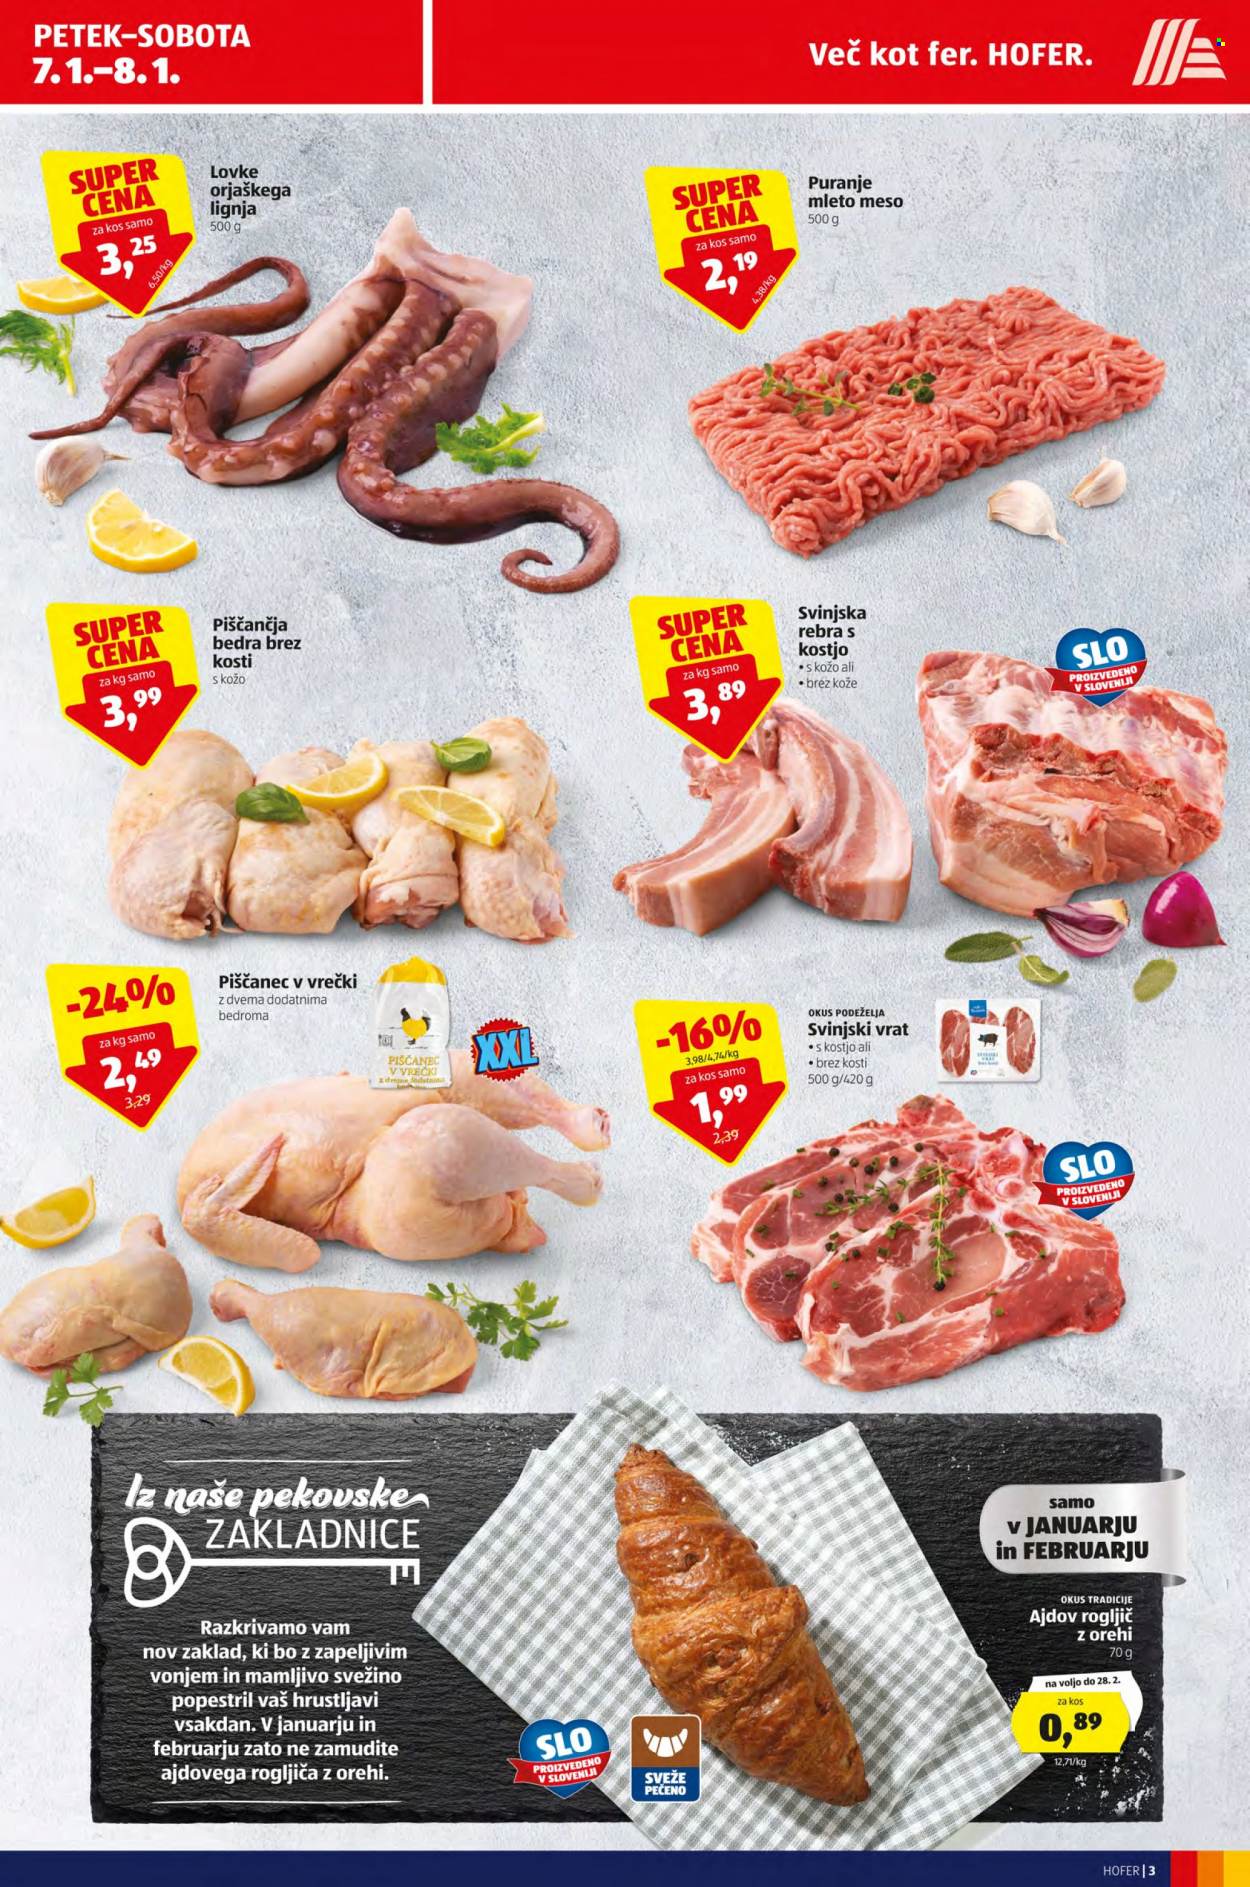 thumbnail - Hofer katalog - 7.1.2022 - 15.1.2022 - Ponudba izdelkov - piščančja bedra, piščanec, piščančje meso, rebra, mleto meso, svinjska rebra, svinjski vrat, svinjski vrat s kostjo, svinjsko meso, orehi. Stran 3.